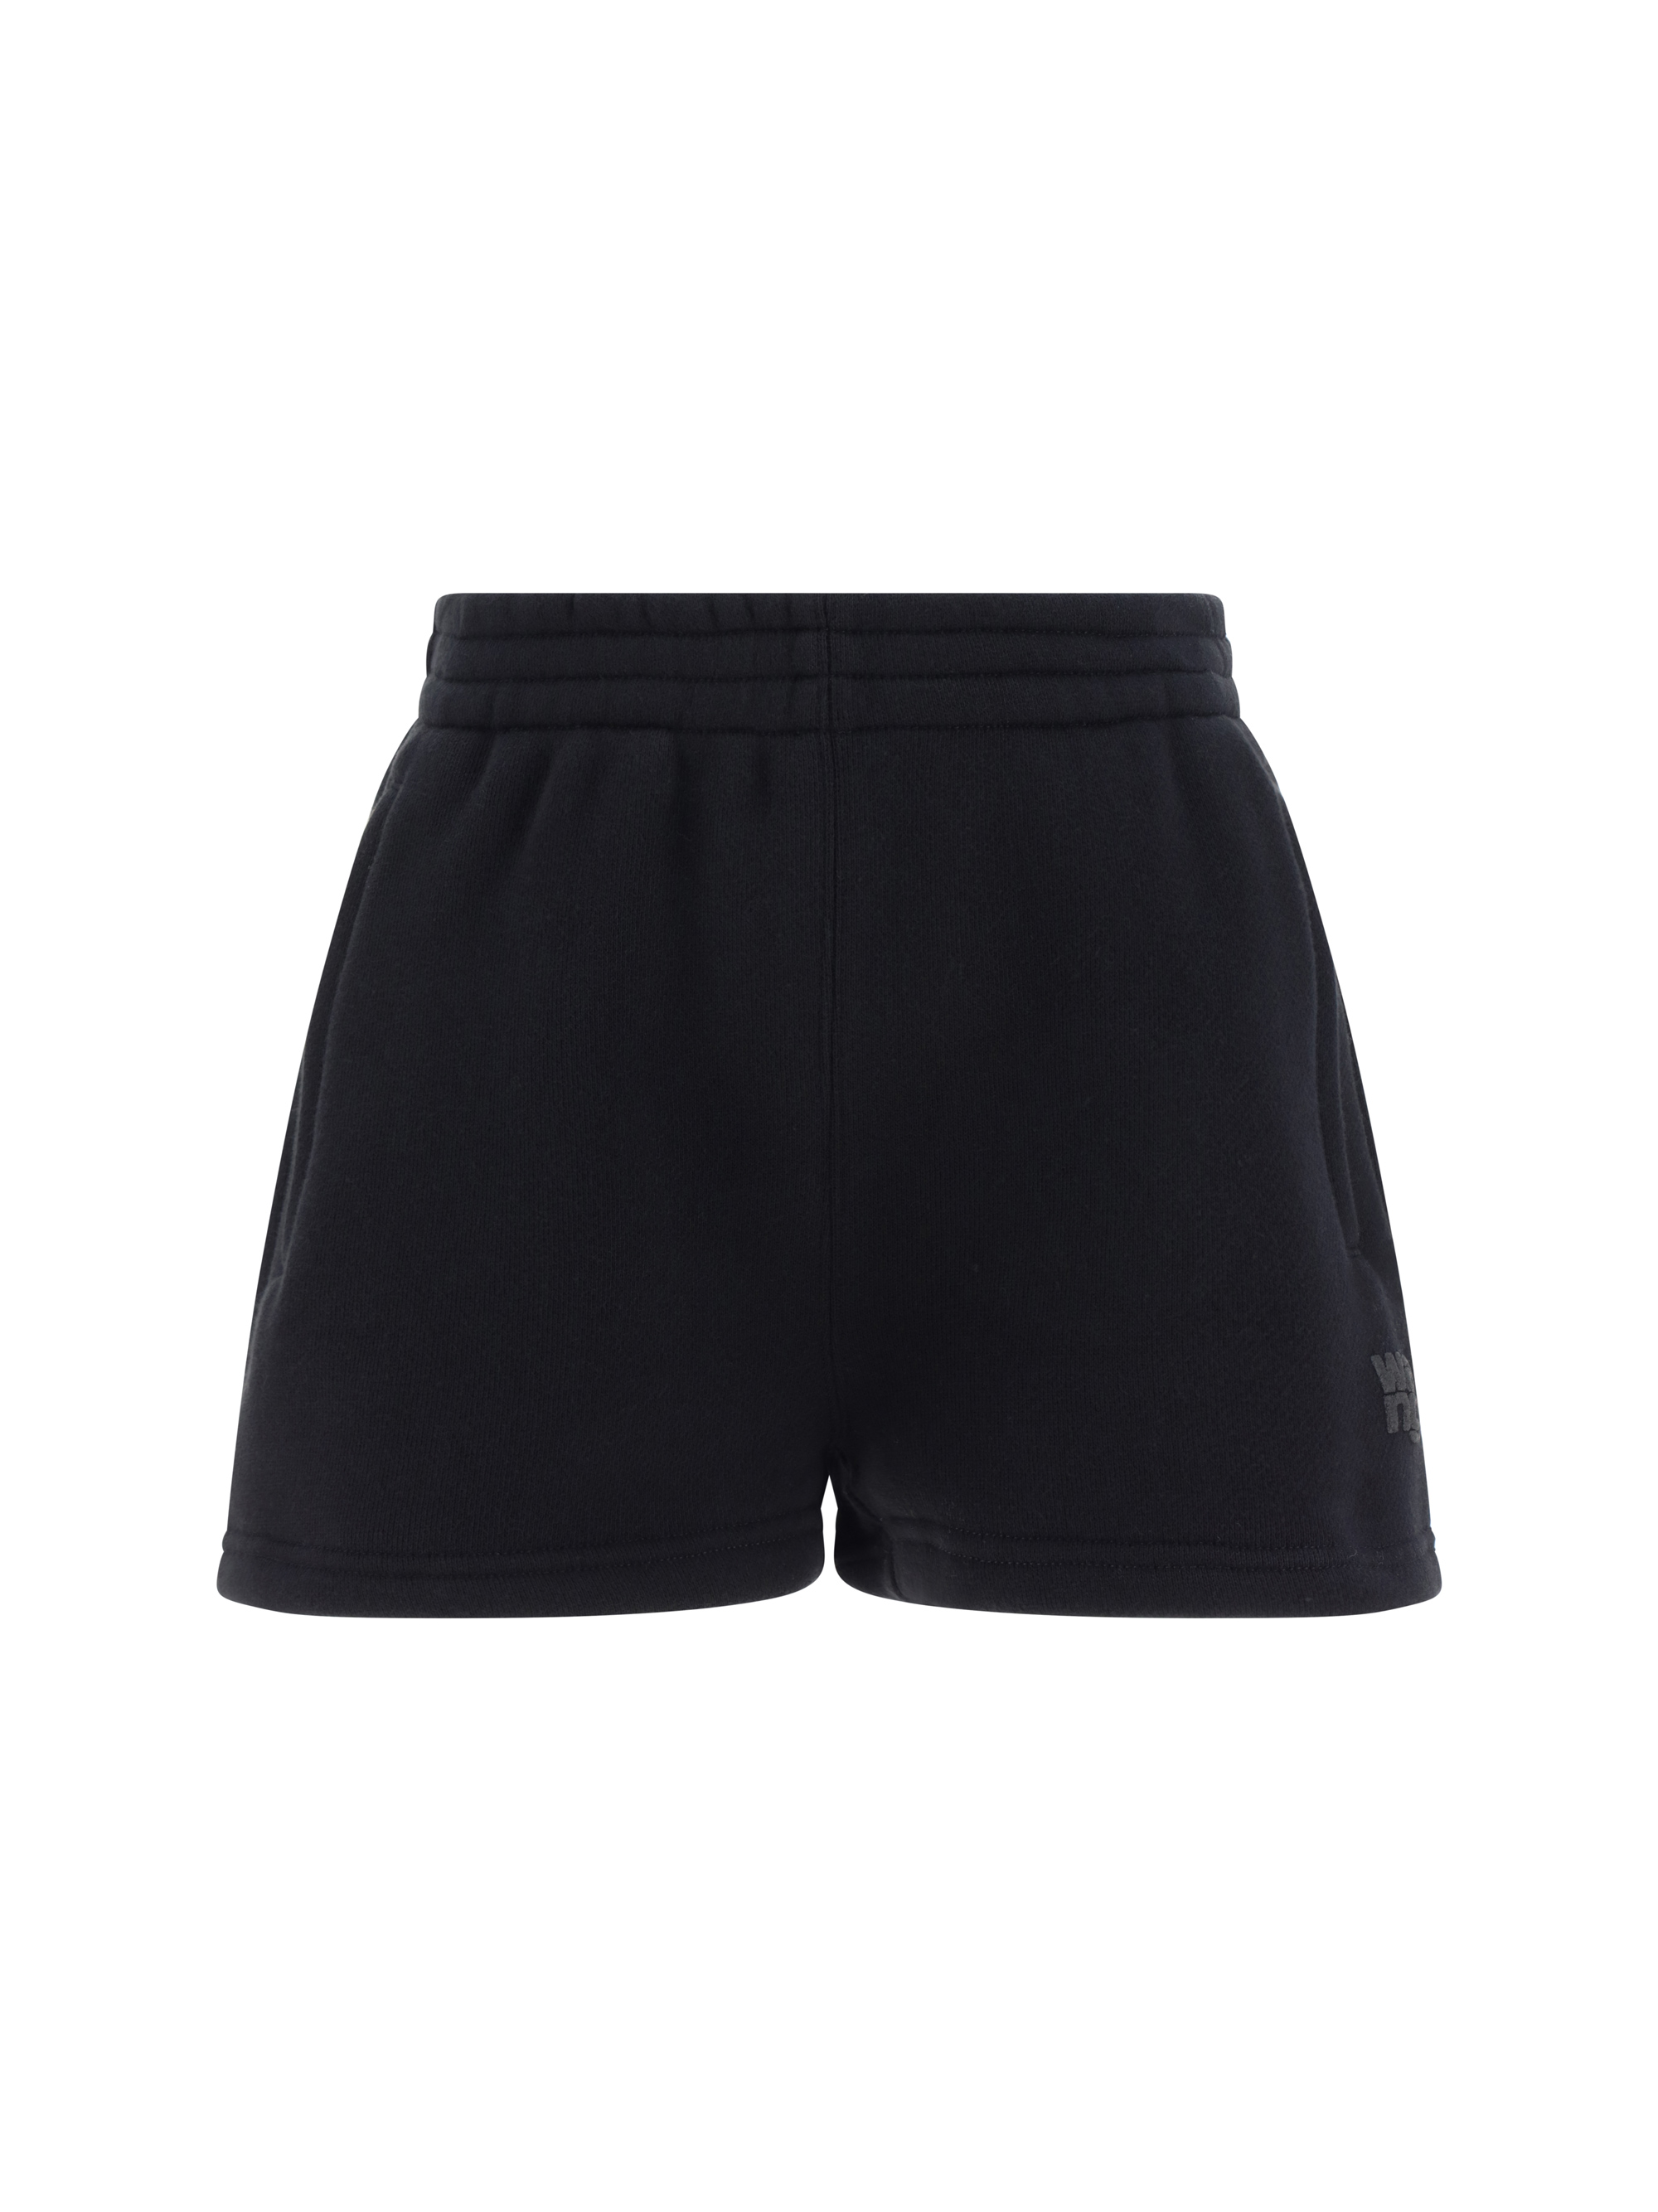 alexander wang - shorts